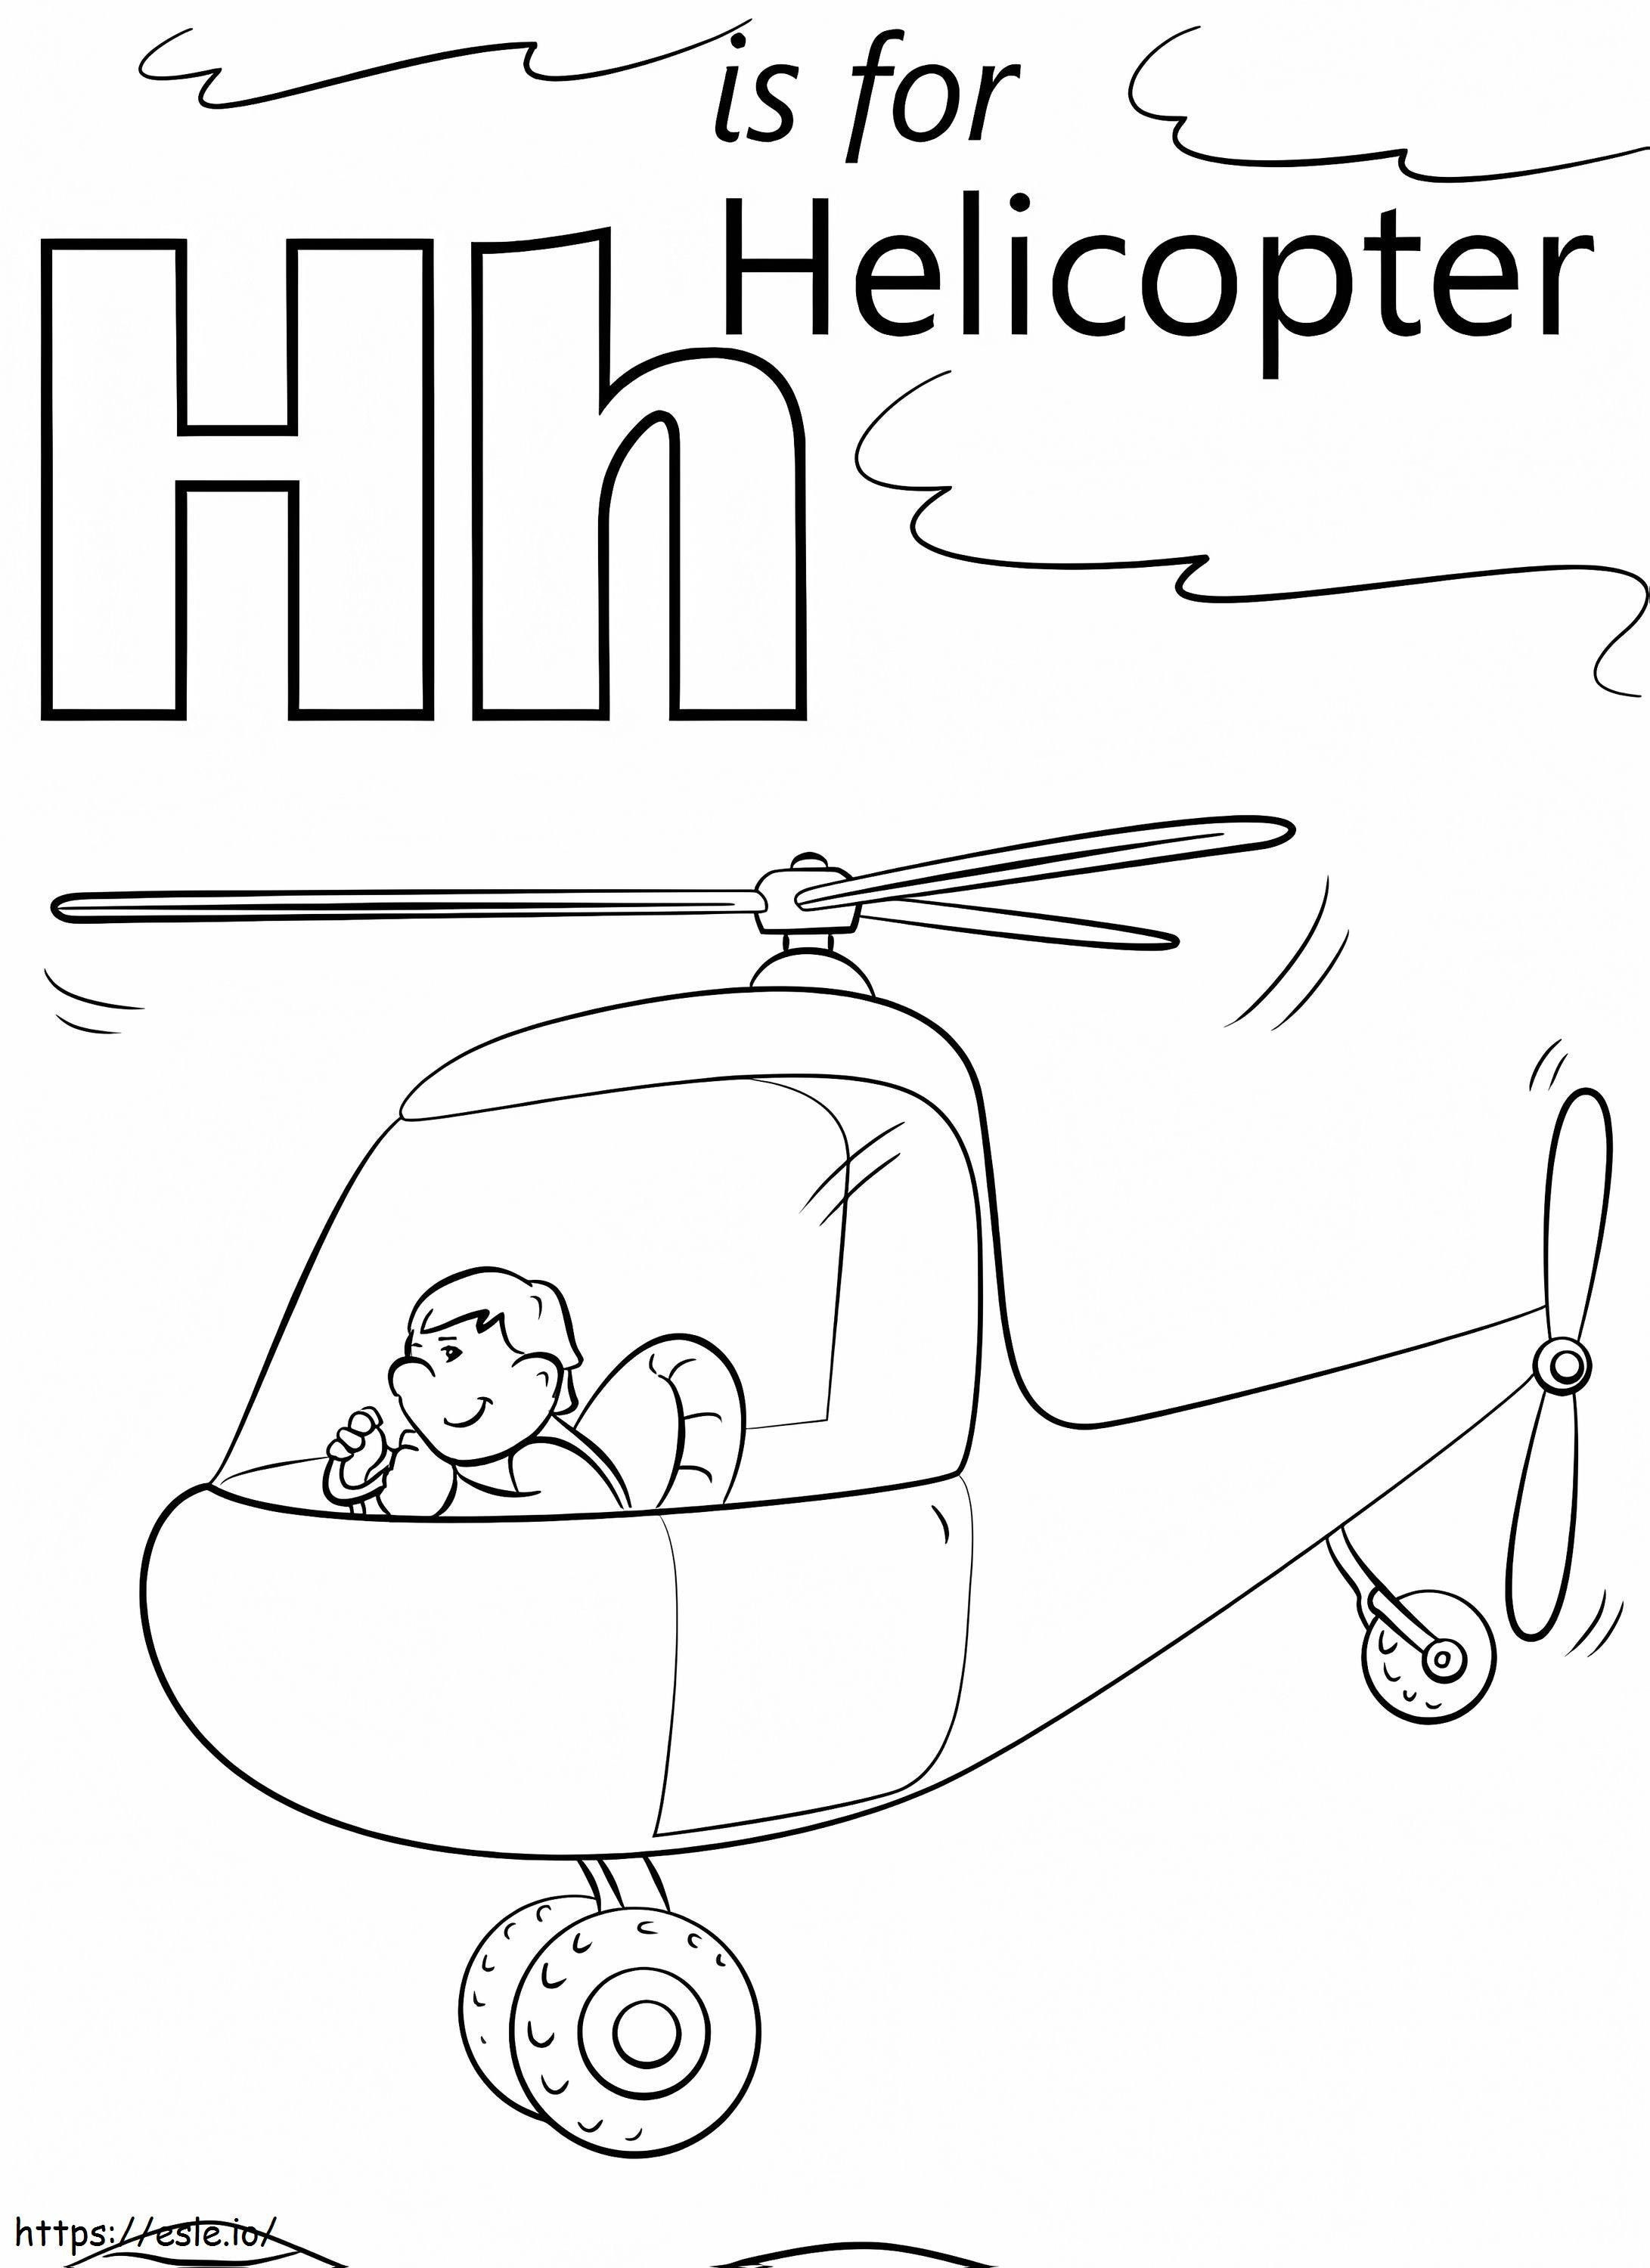 Hubschrauber-Buchstabe H ausmalbilder